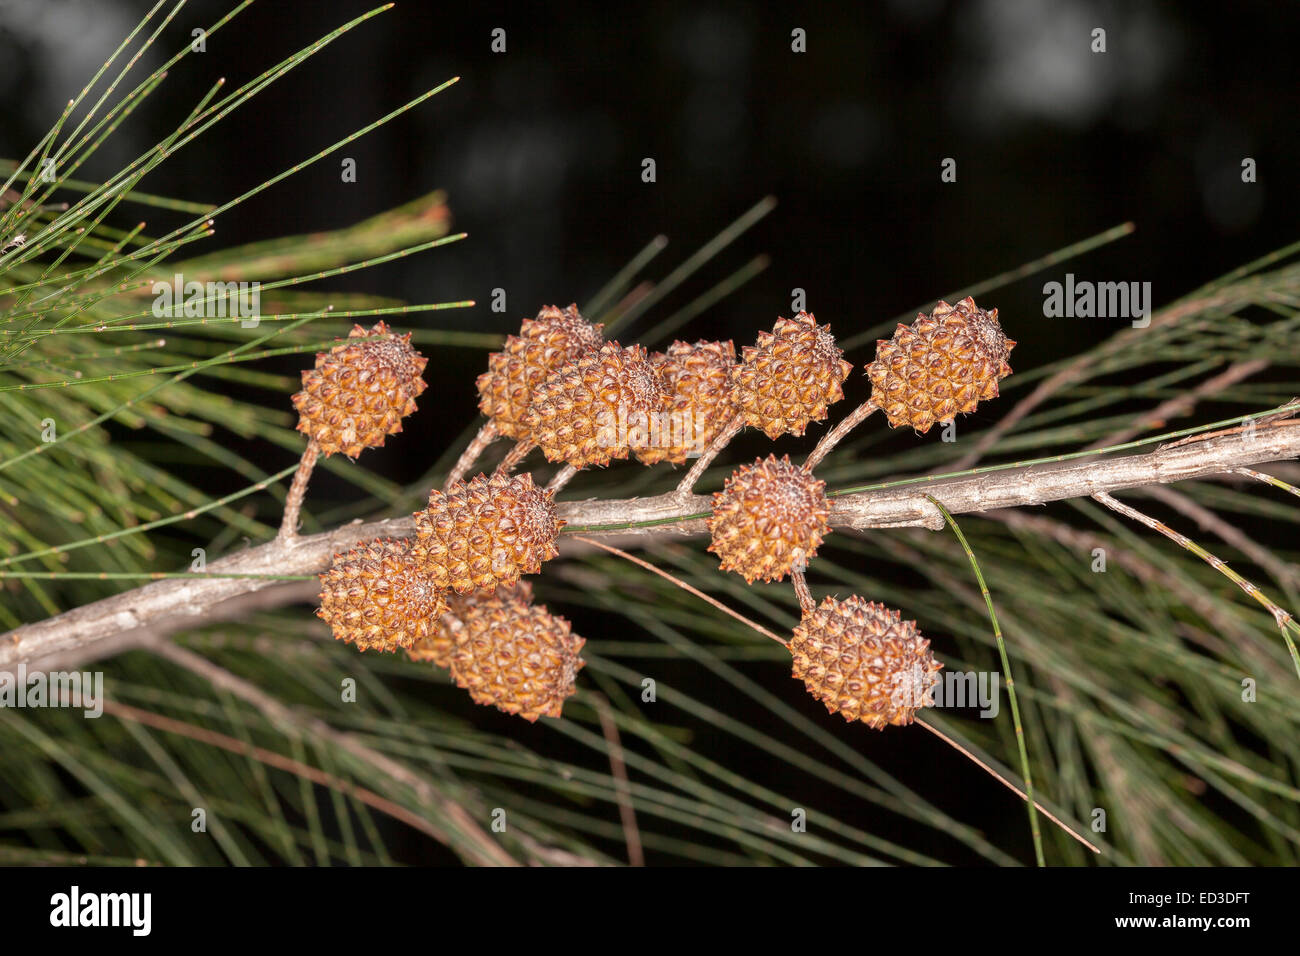 Cluster der rötlich braunen Samen Zapfen des Casuarina, australische Ureinwohner sie Eiche Baum-Spezies, auf Ast mit grauem Laub Stockfoto